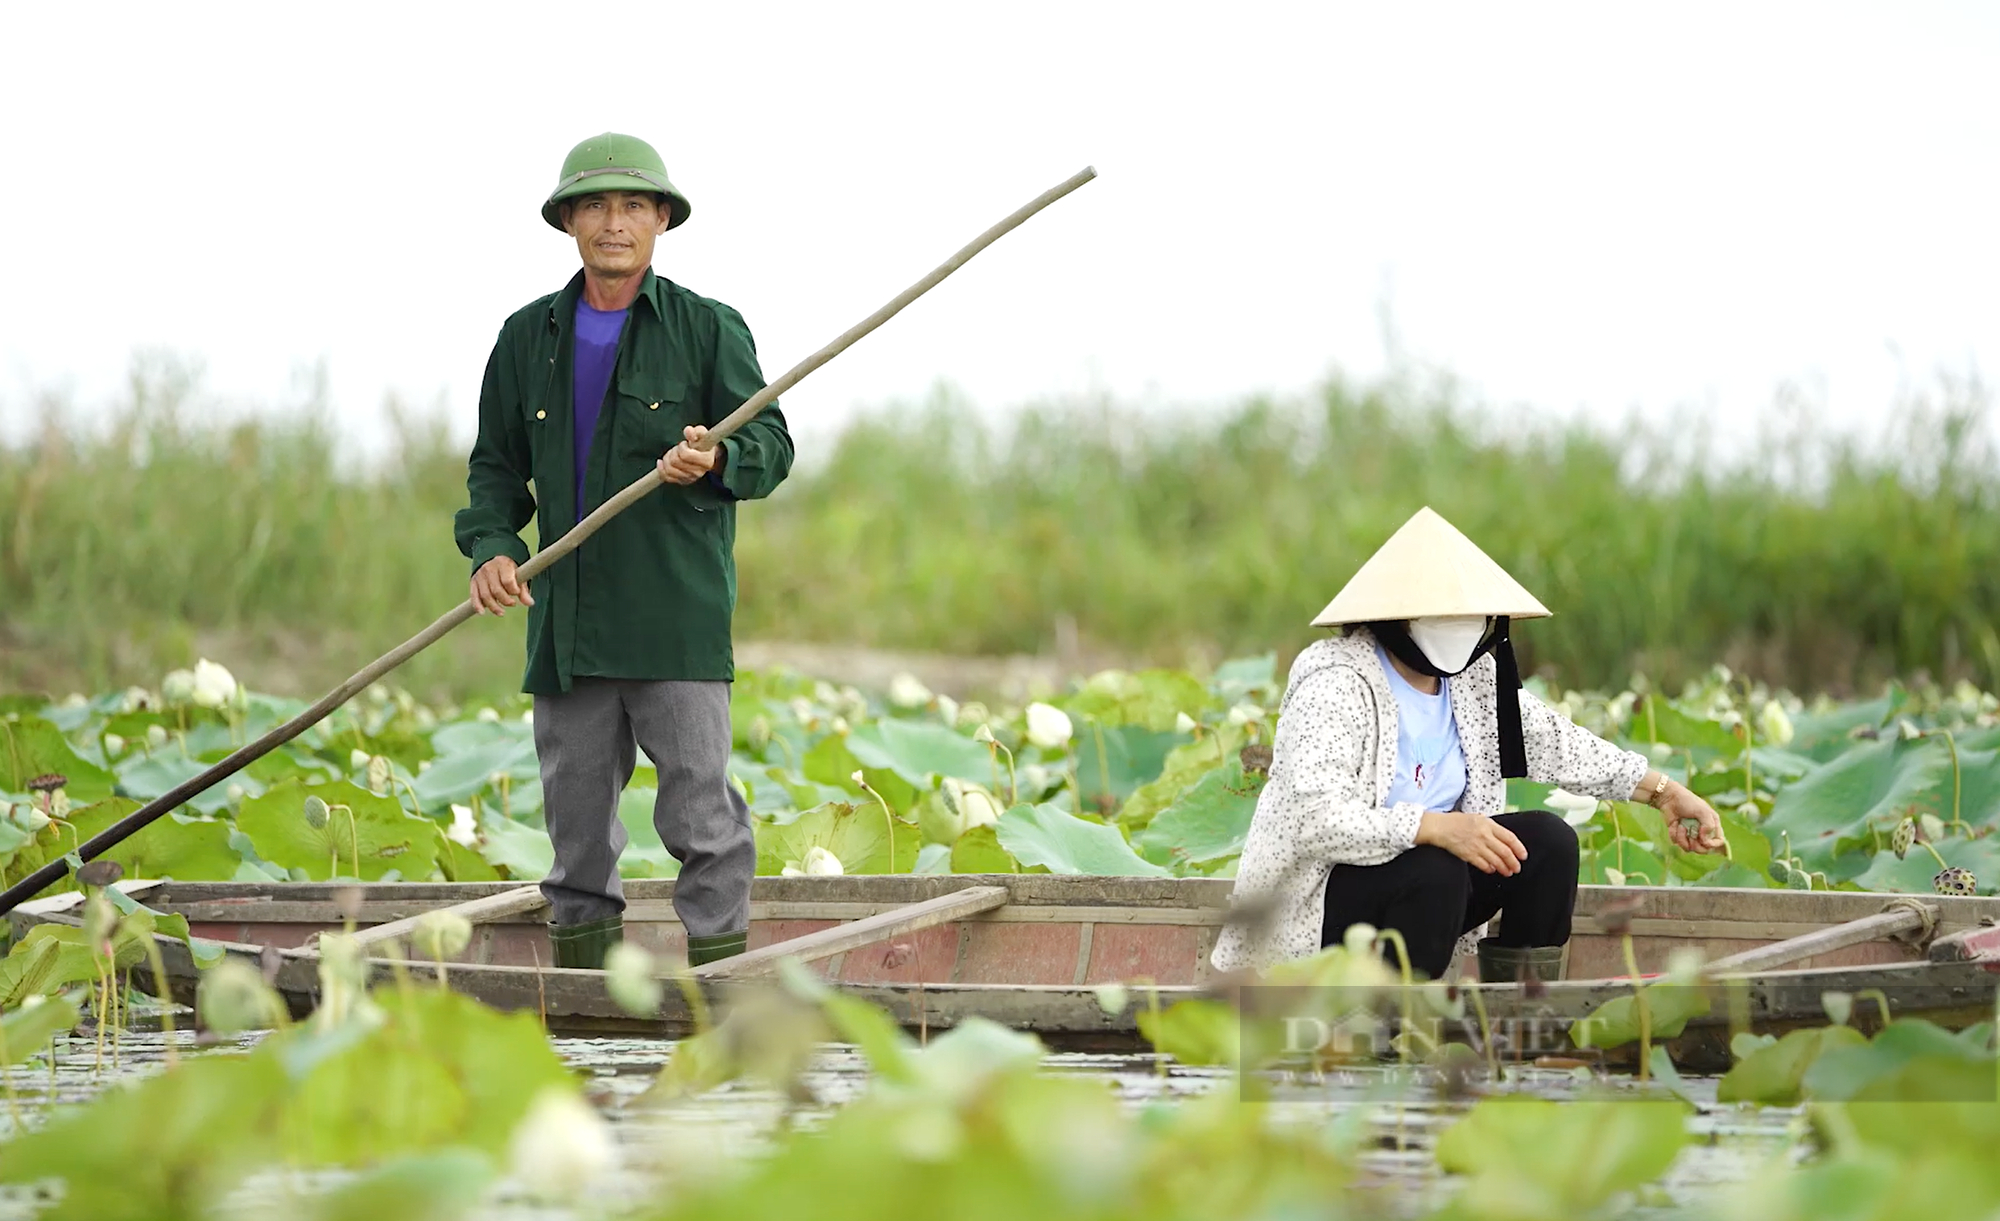 Vợ chồng nông dân ở Quảng Bình bảo vệ chim trời suốt 5 năm qua - Ảnh 1.